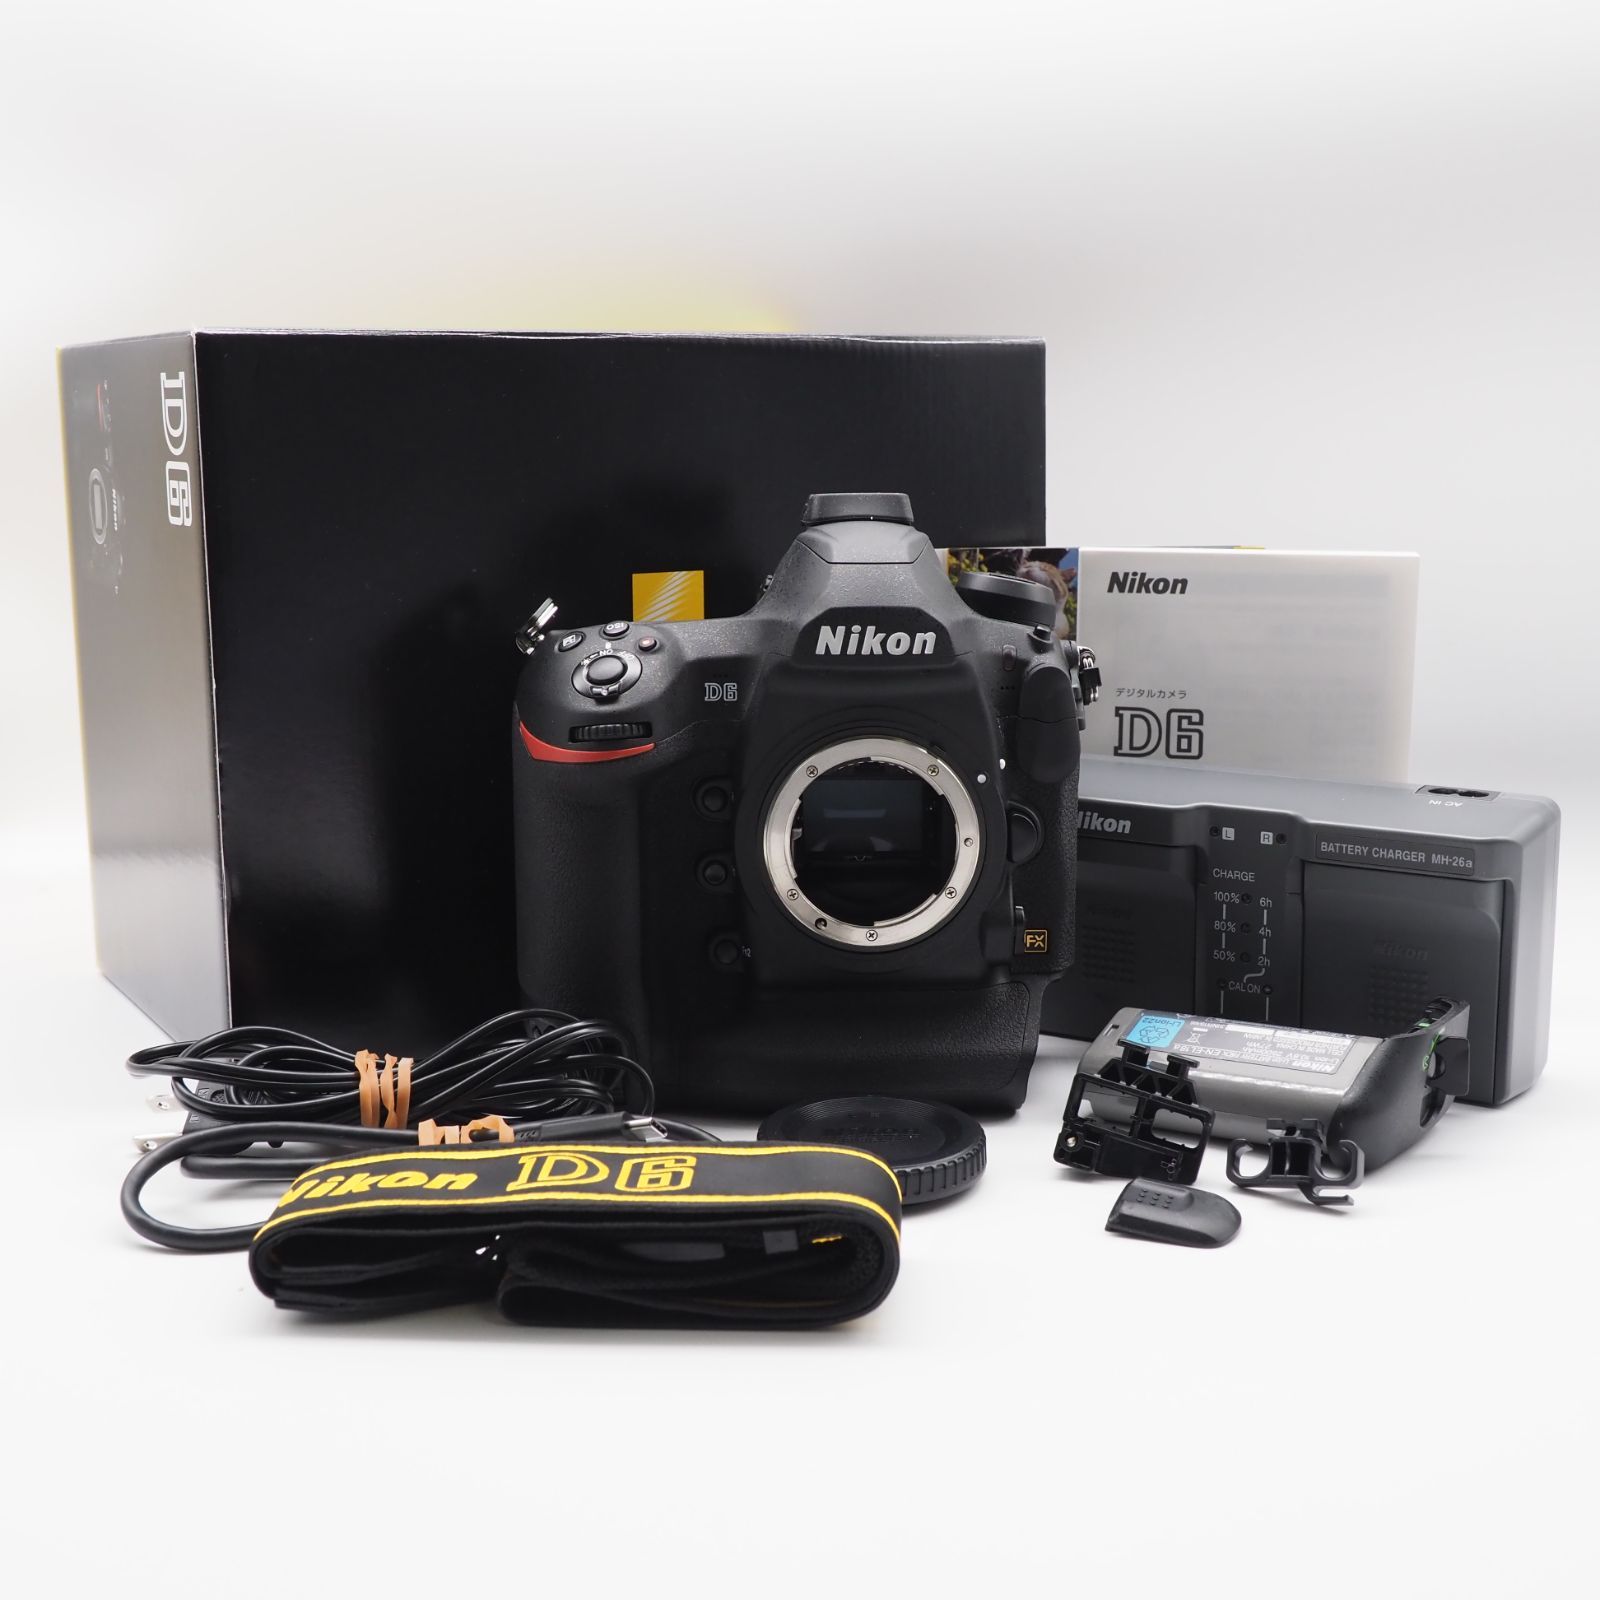 Nikon デジタル一眼レフカメラ ブラック D6 - 5